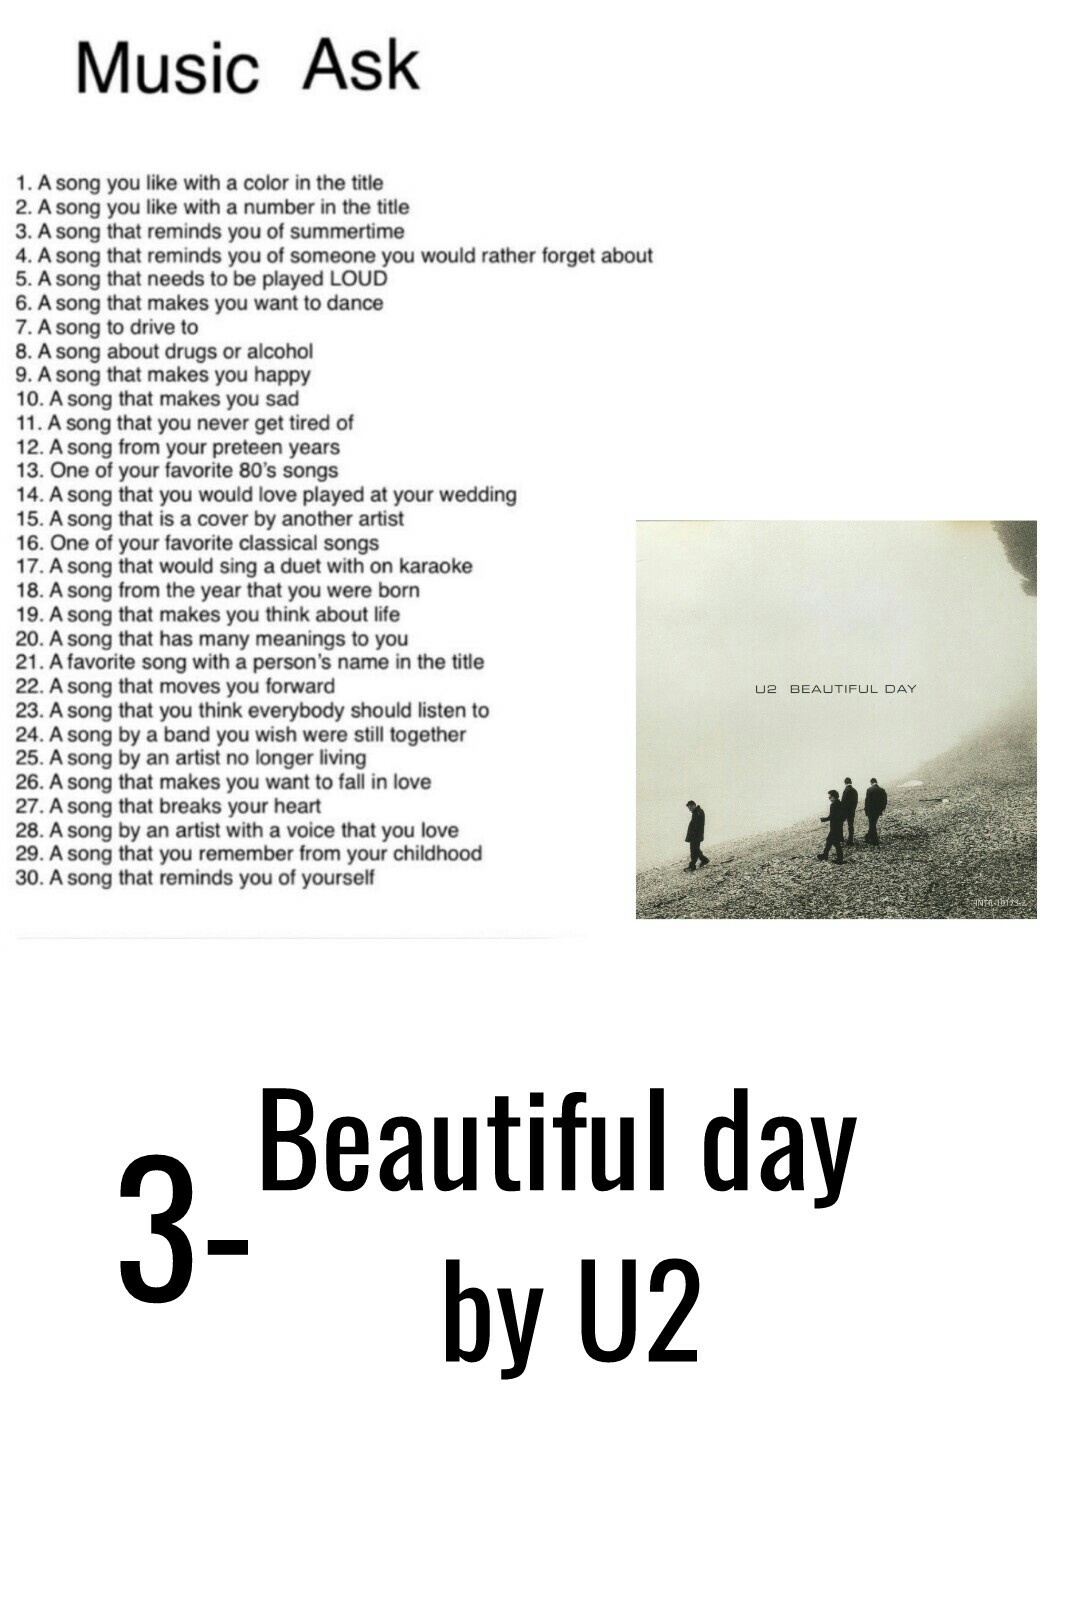 3-Beautiful day by U2